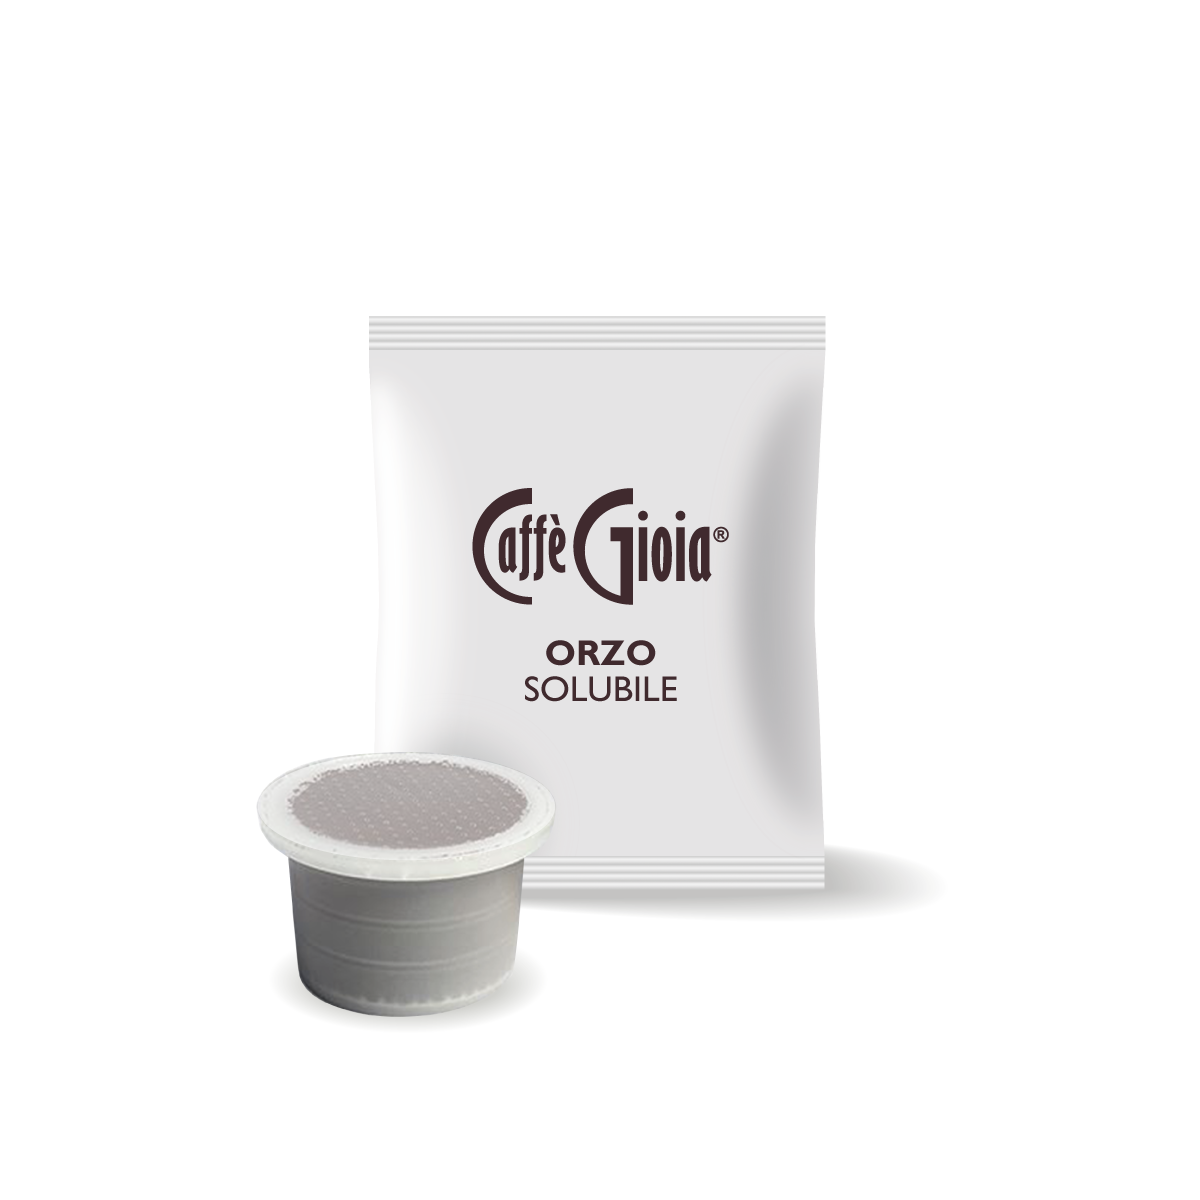 Caffe Gioia Single serve Nespresso Capsules Various Blends - Original line